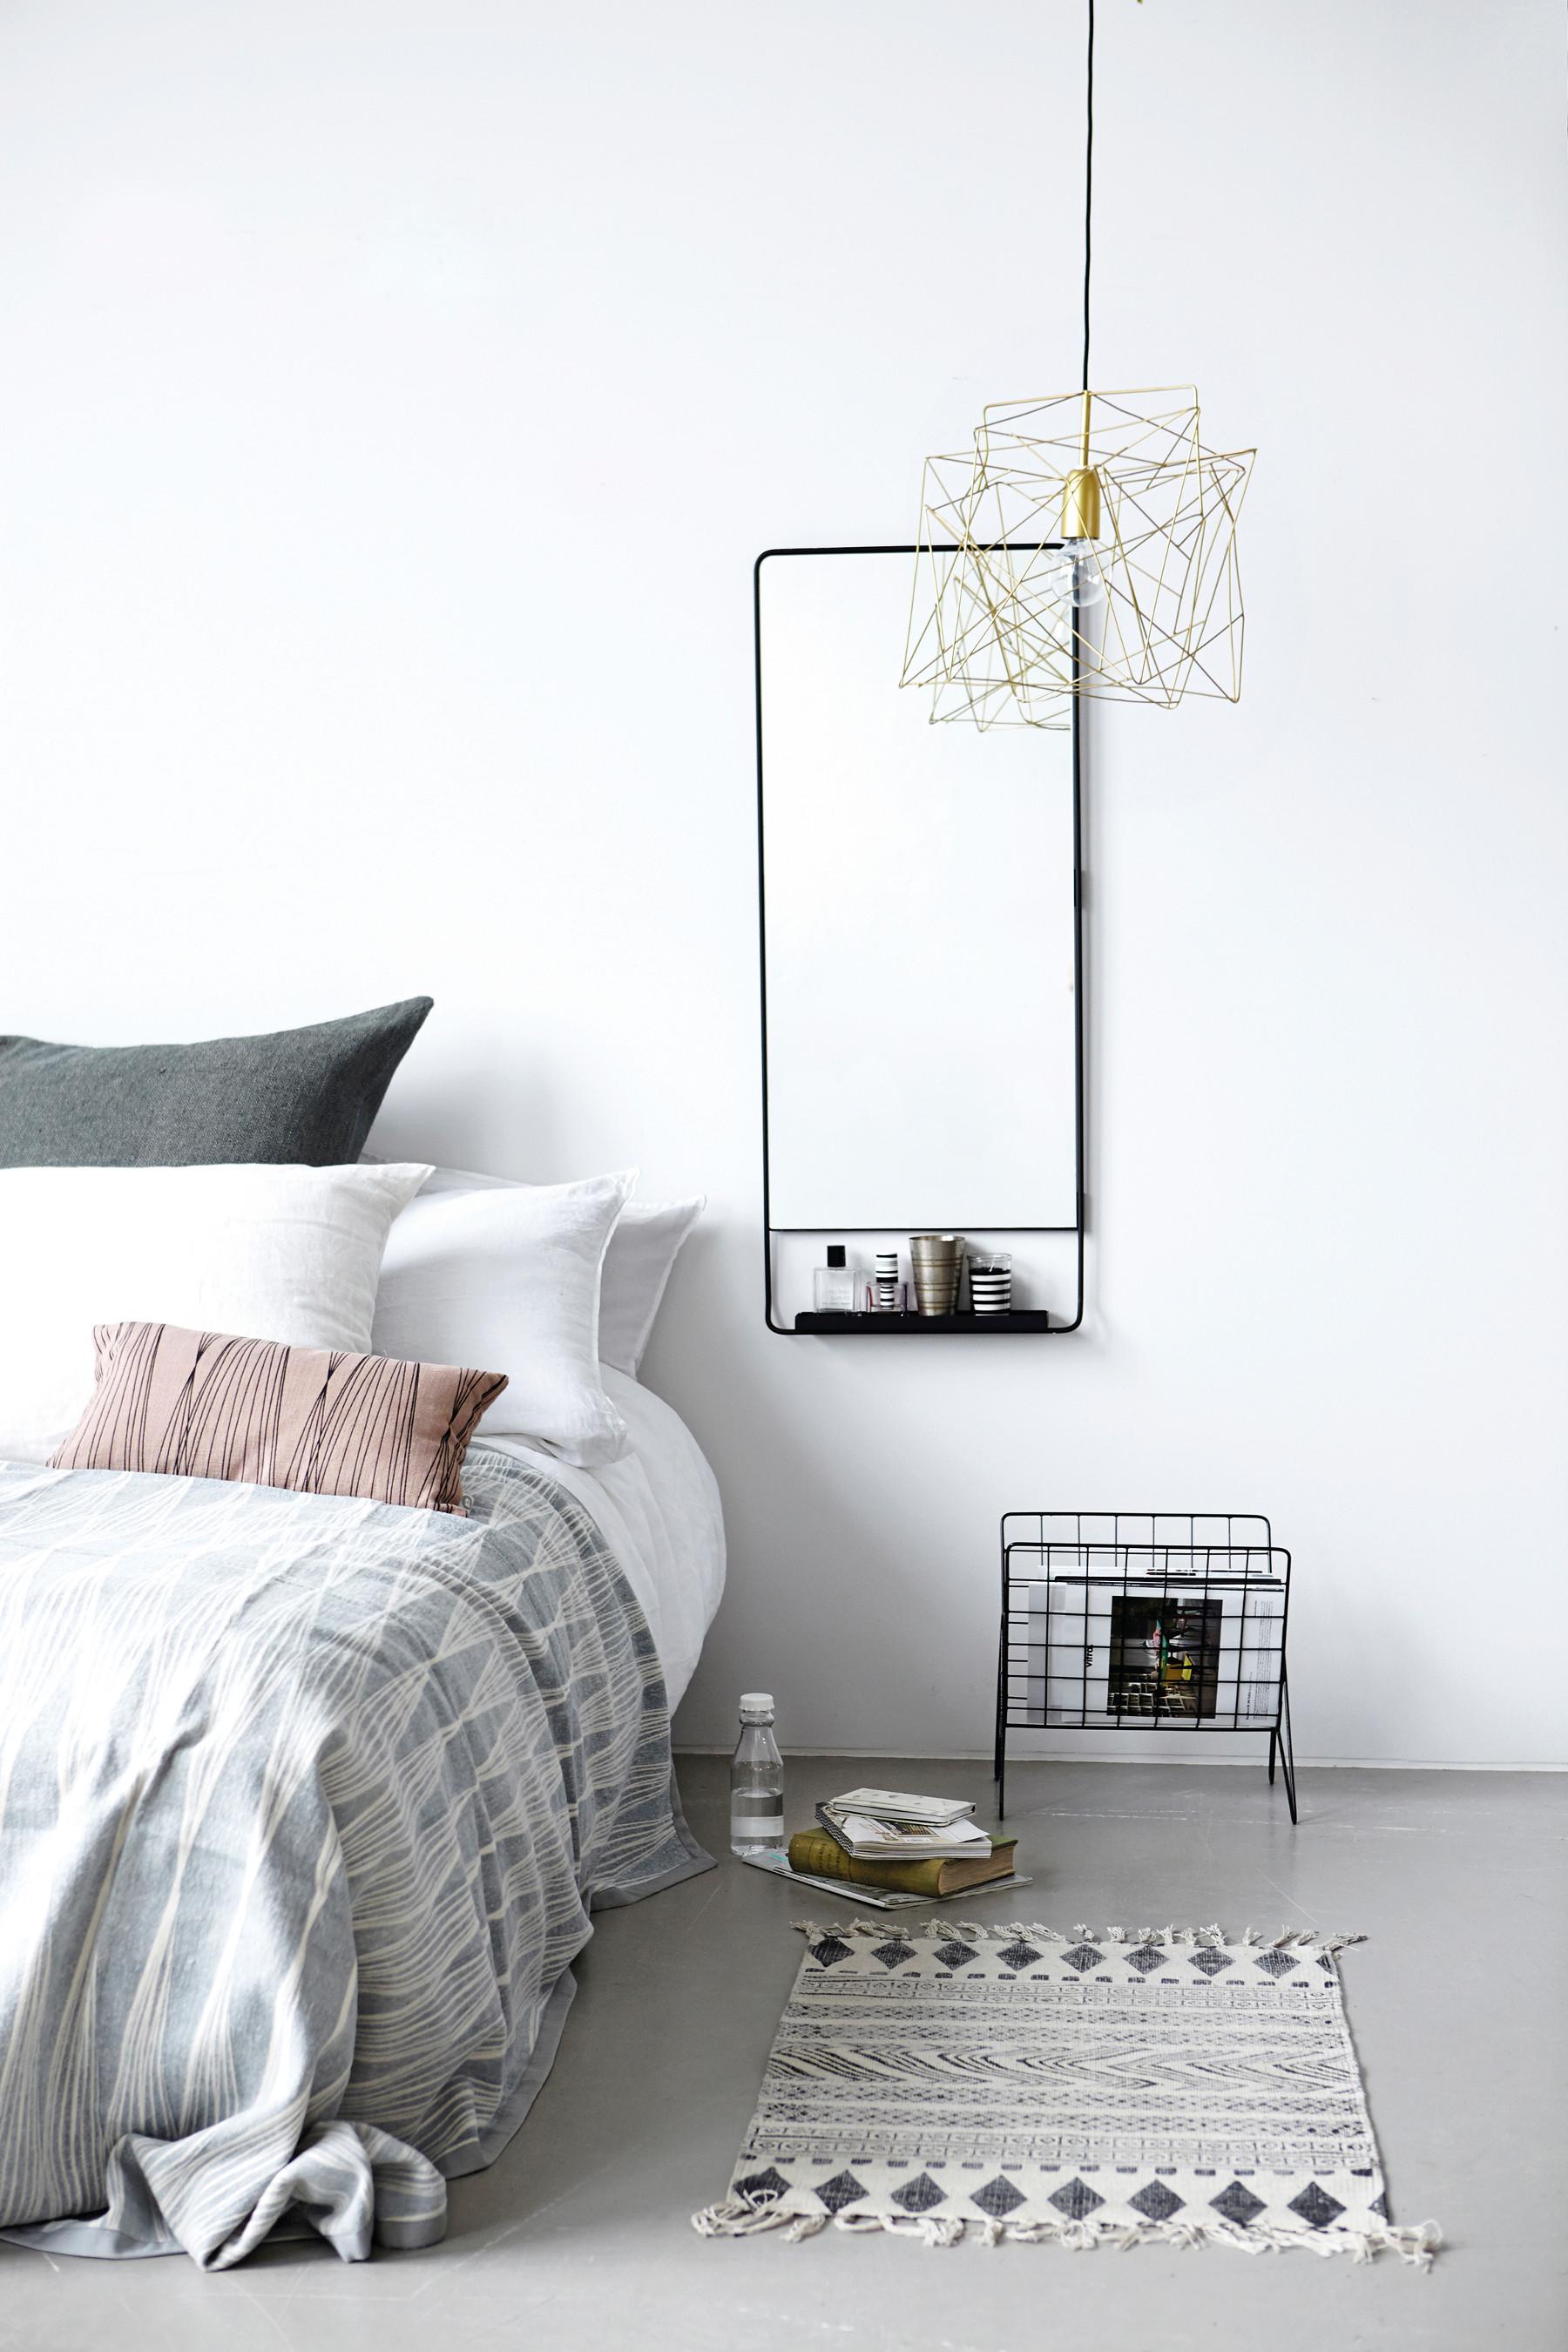 Spiegeldesign im Schlafzimmer #teppich #spiegel #tagesdecke #kissen #pendelleuchte ©Petit Pont